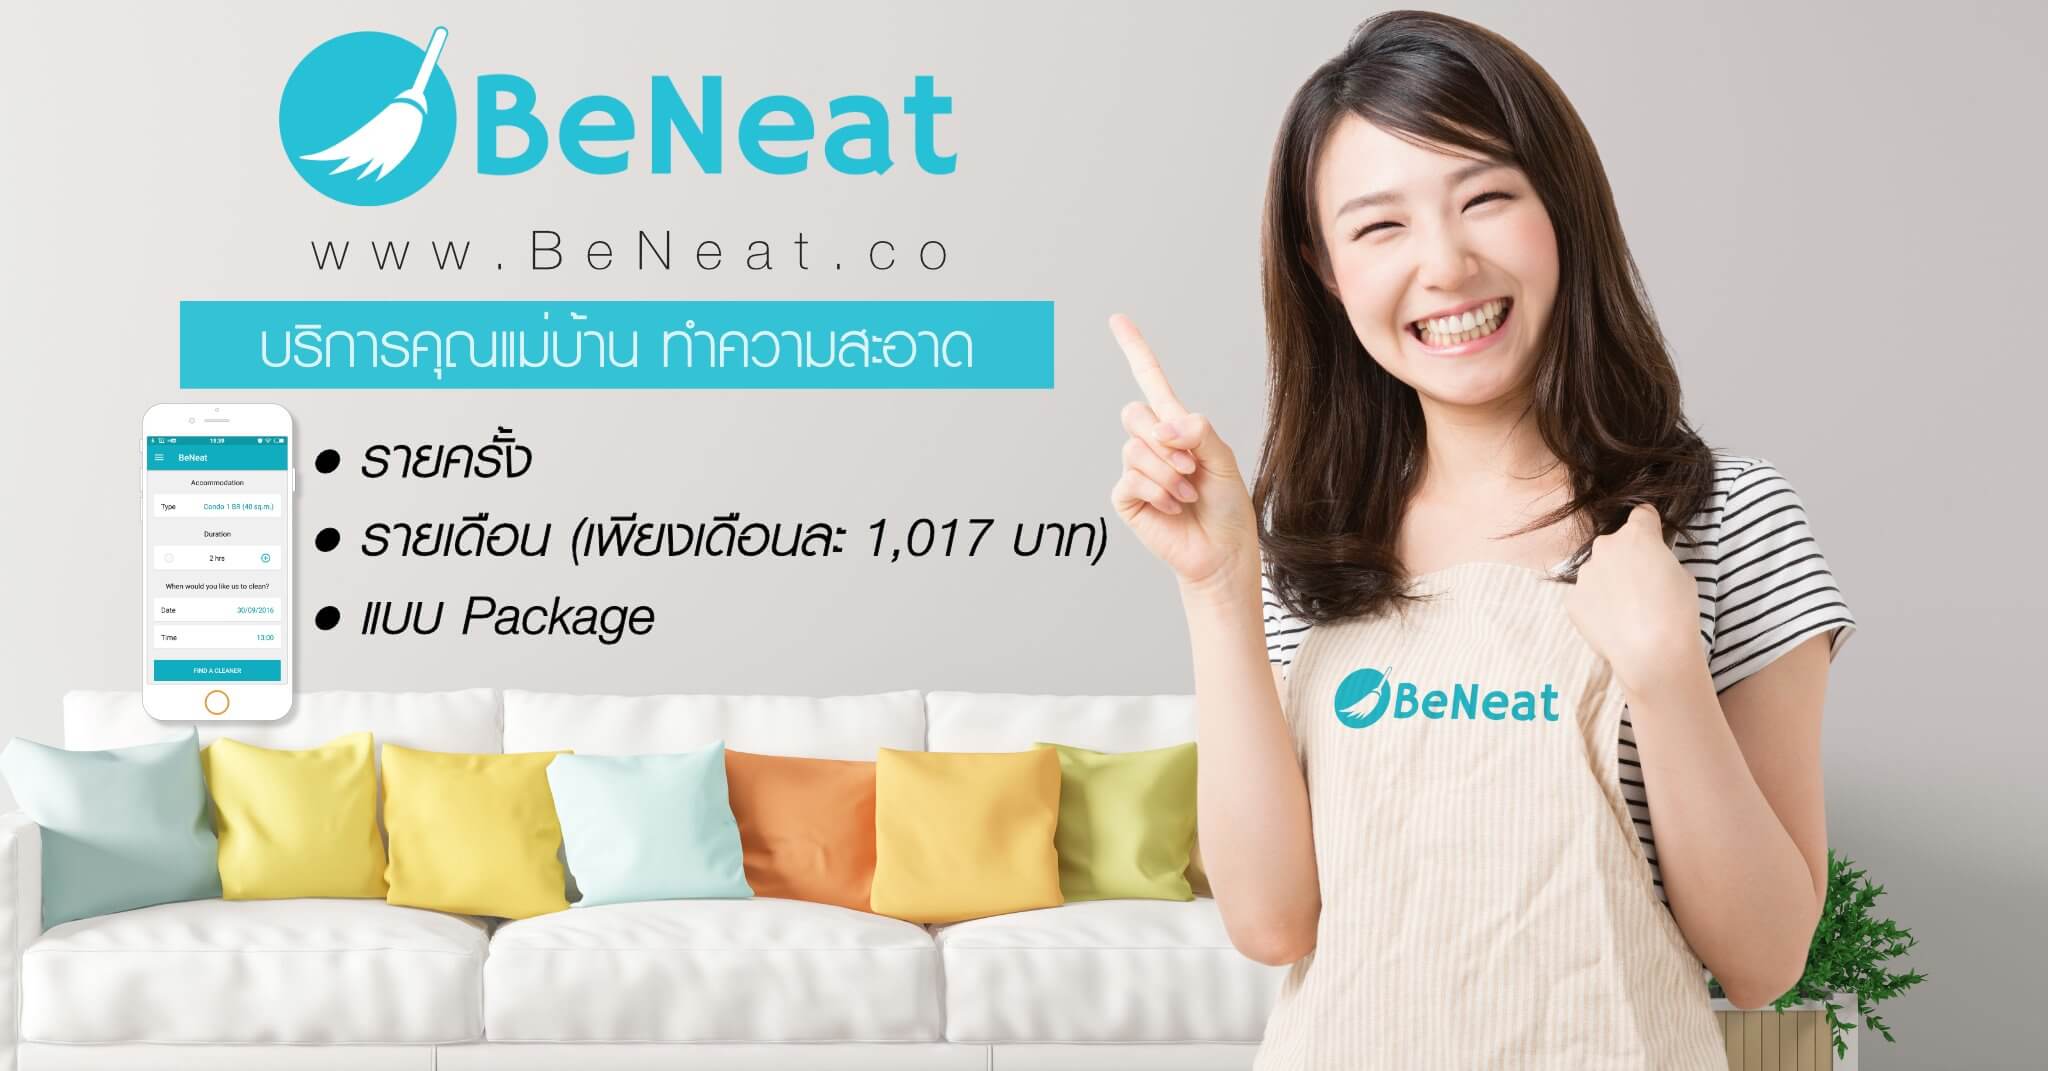 บริษัท บีนีท จำกัด - BeNeat แม่บ้าน ทำความสะอาด ออนไลน์